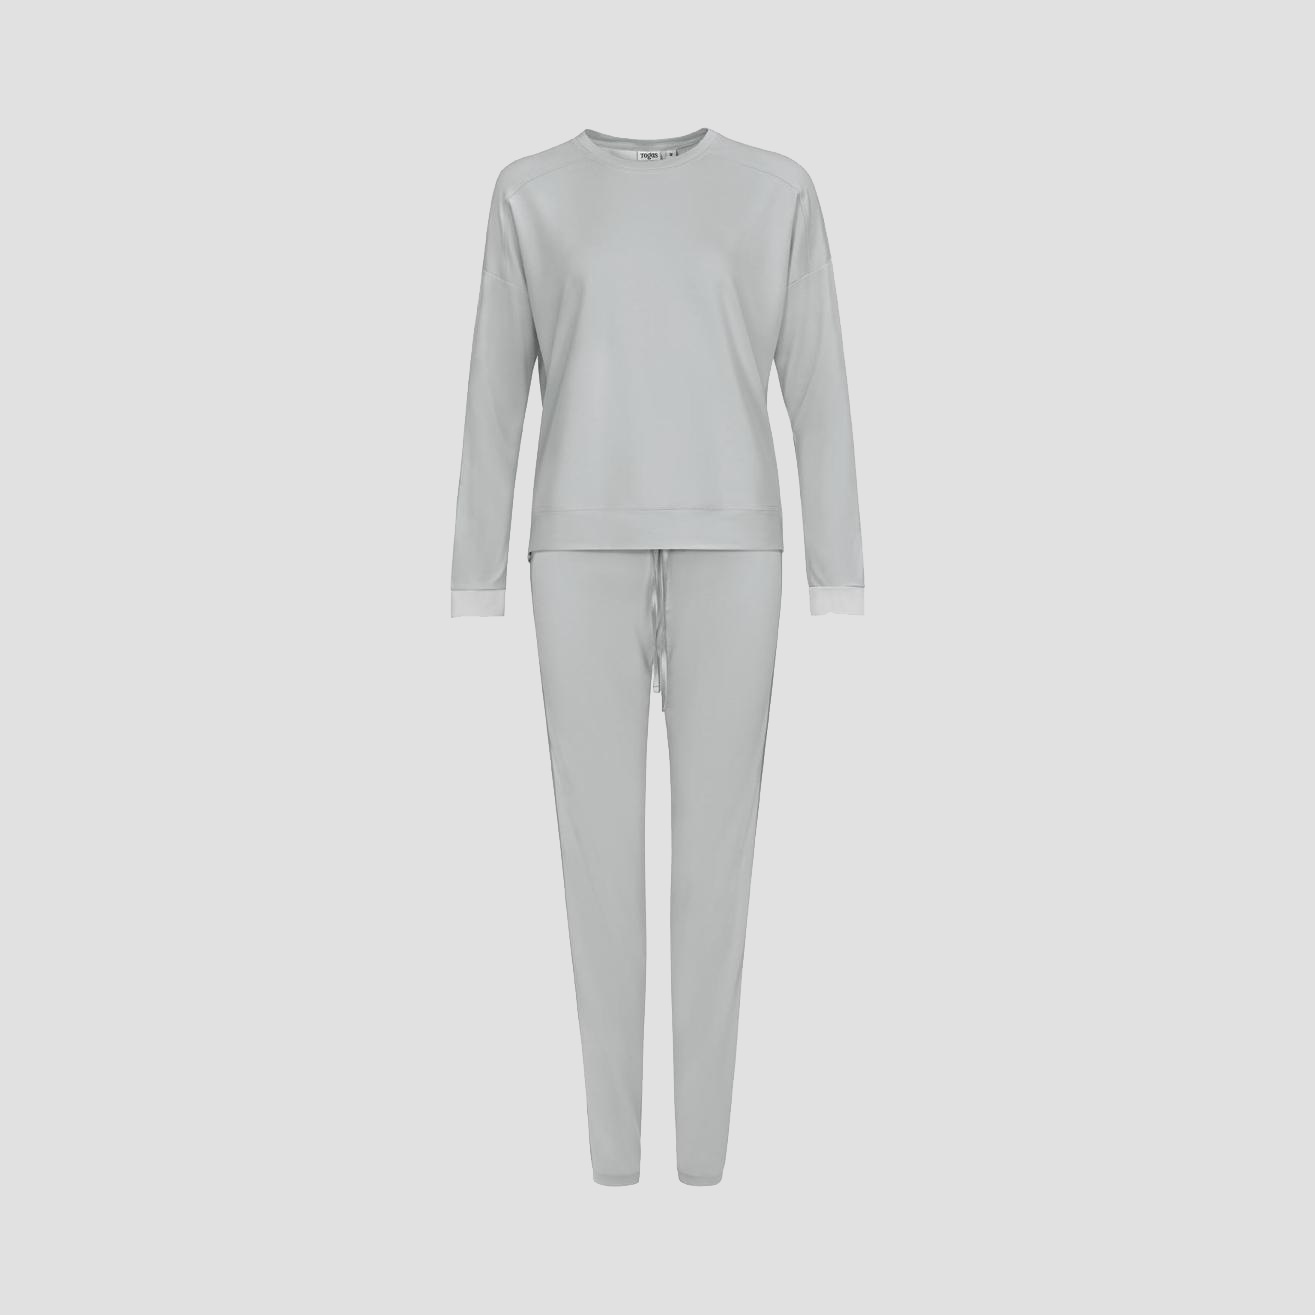 Пижама Togas Рене серая женская L/48, цвет серый, размер 48